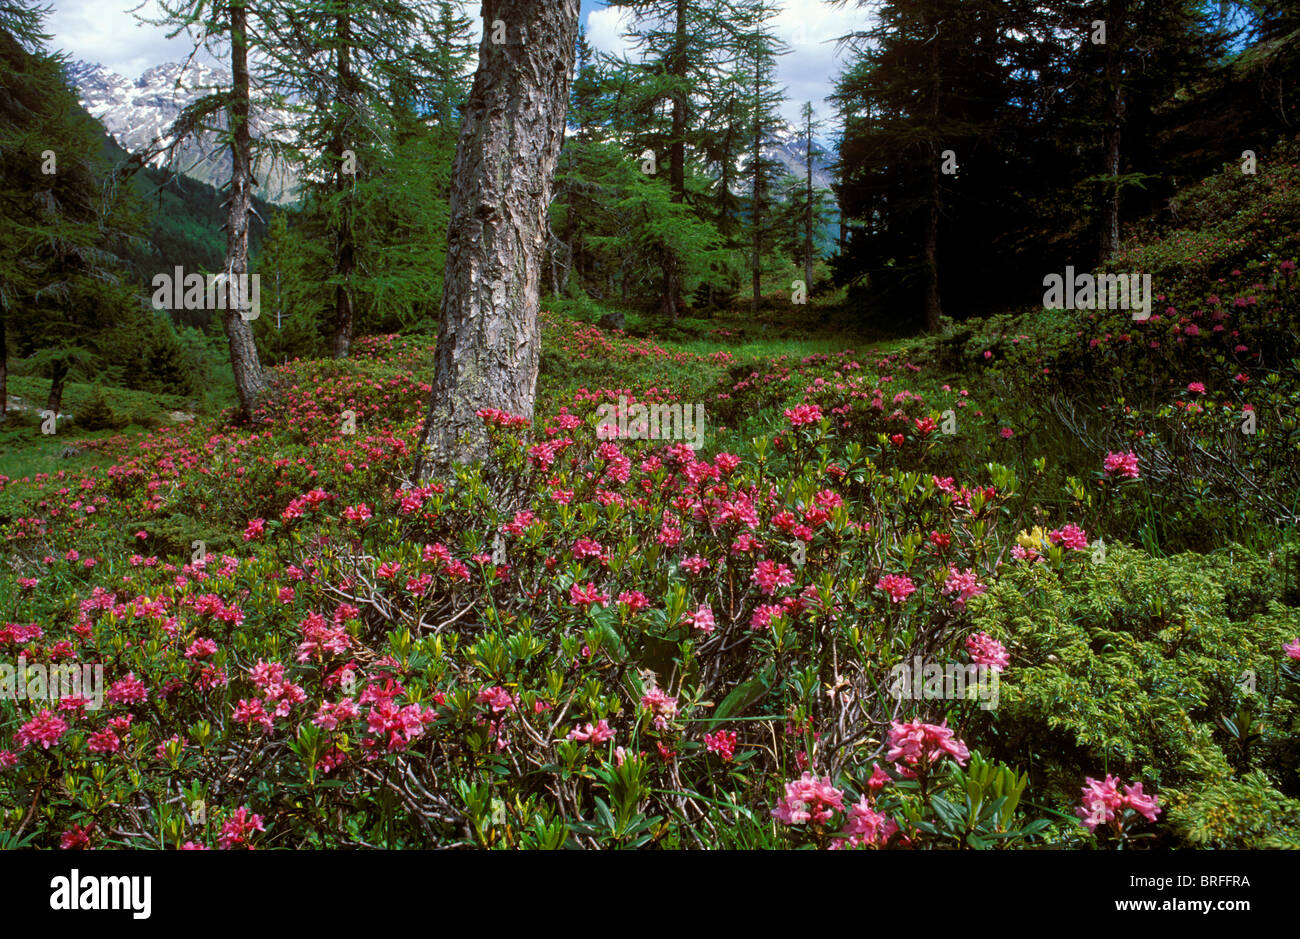 Alpenrose (Rhododendron ferrugineum) dans une forêt de mélèzes, Val Poschiavo, Bernina, Grisons, Suisse, Europe Banque D'Images